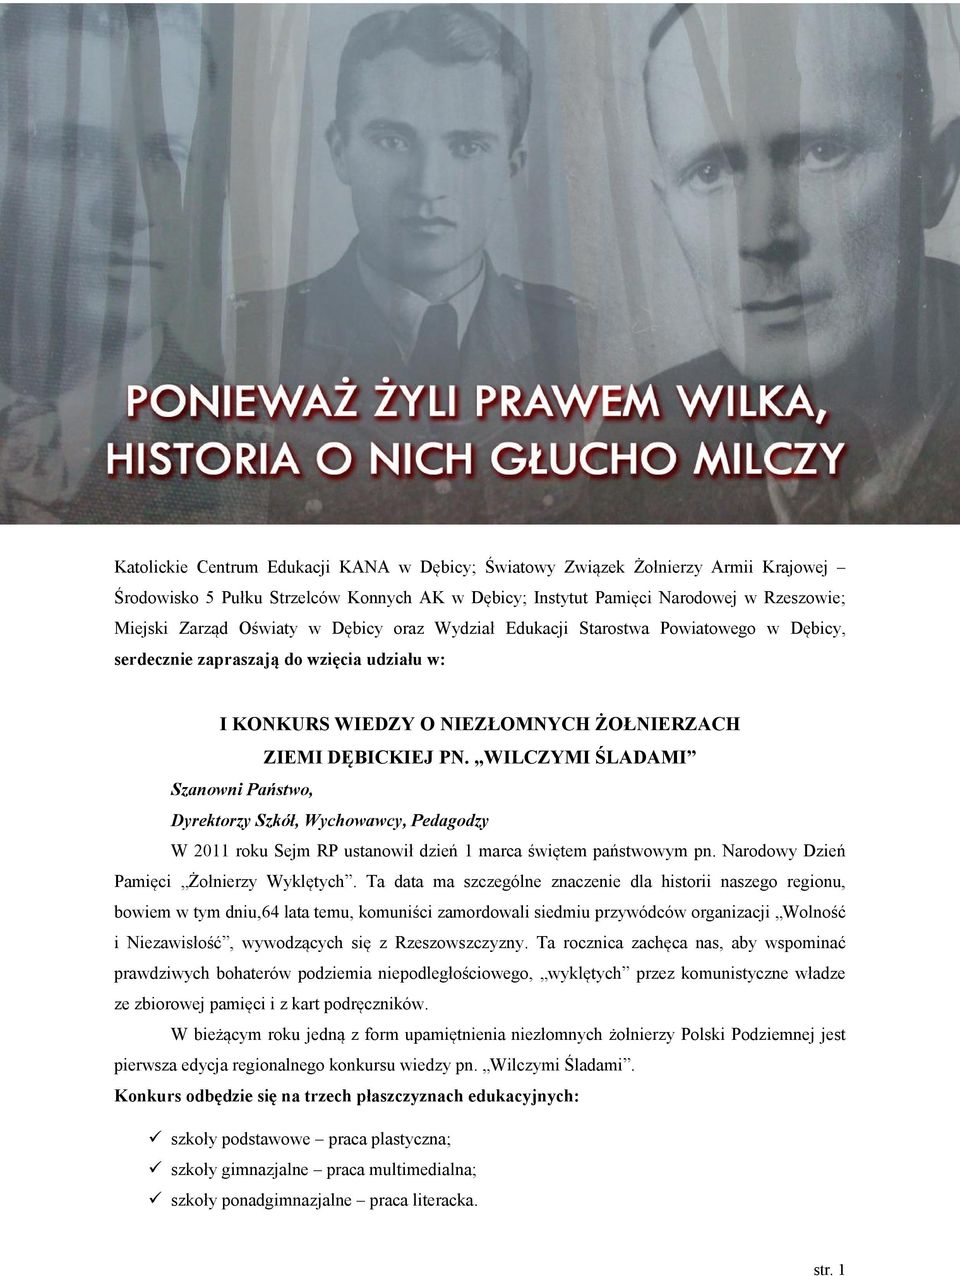 WILCZYMI ŚLADAMI Szanowni Państwo, Dyrektorzy Szkół, Wychowawcy, Pedagodzy W 2011 roku Sejm RP ustanowił dzień 1 marca świętem państwowym pn. Narodowy Dzień Pamięci Żołnierzy Wyklętych.